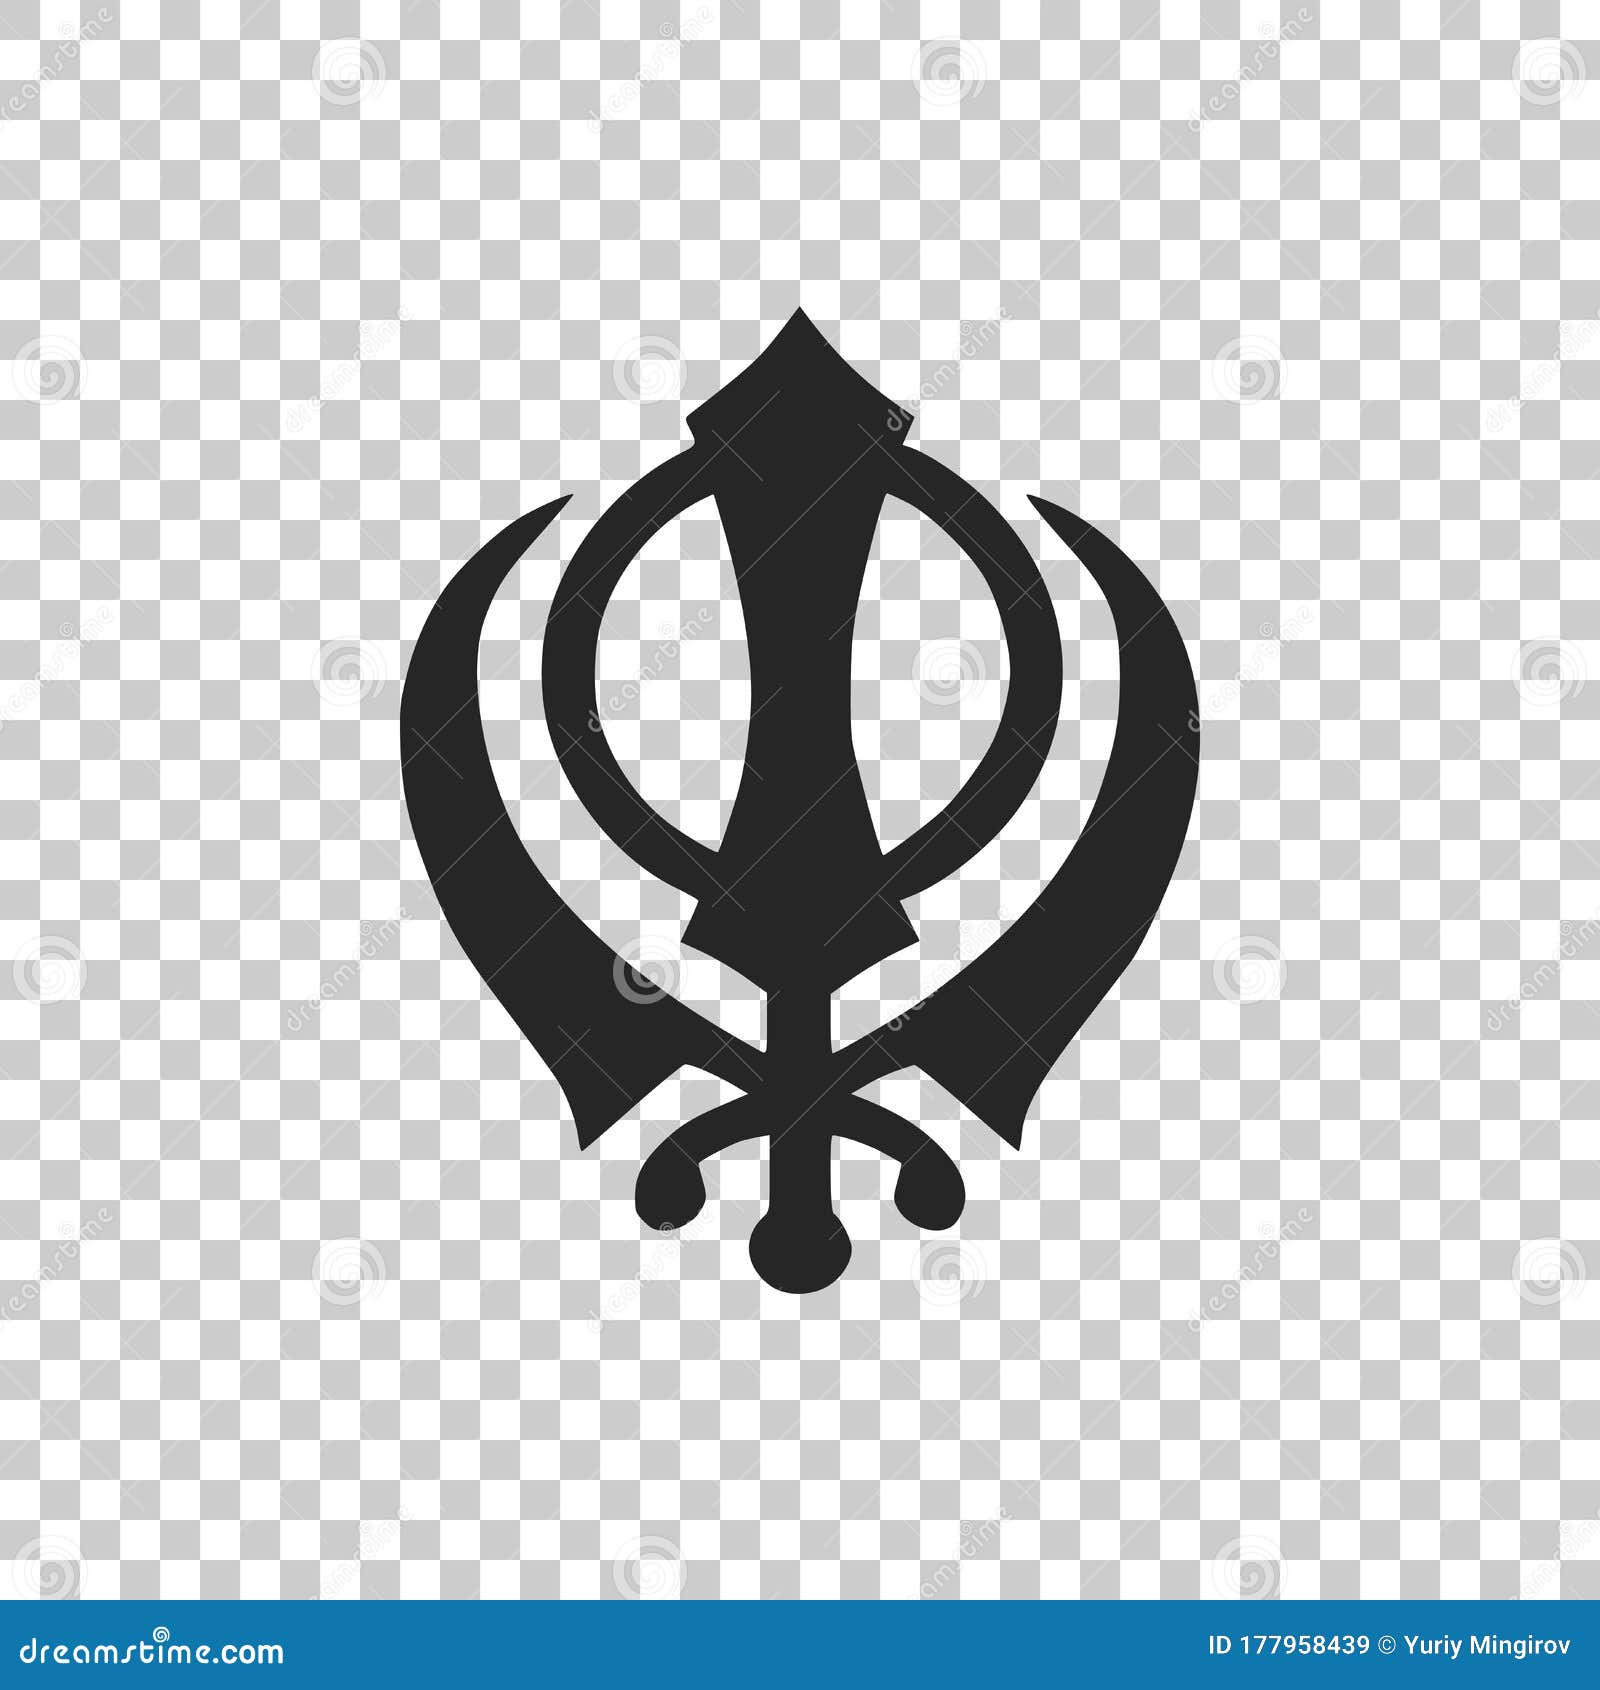 sikhism religion khanda  icon  on transparent background. khanda sikh 